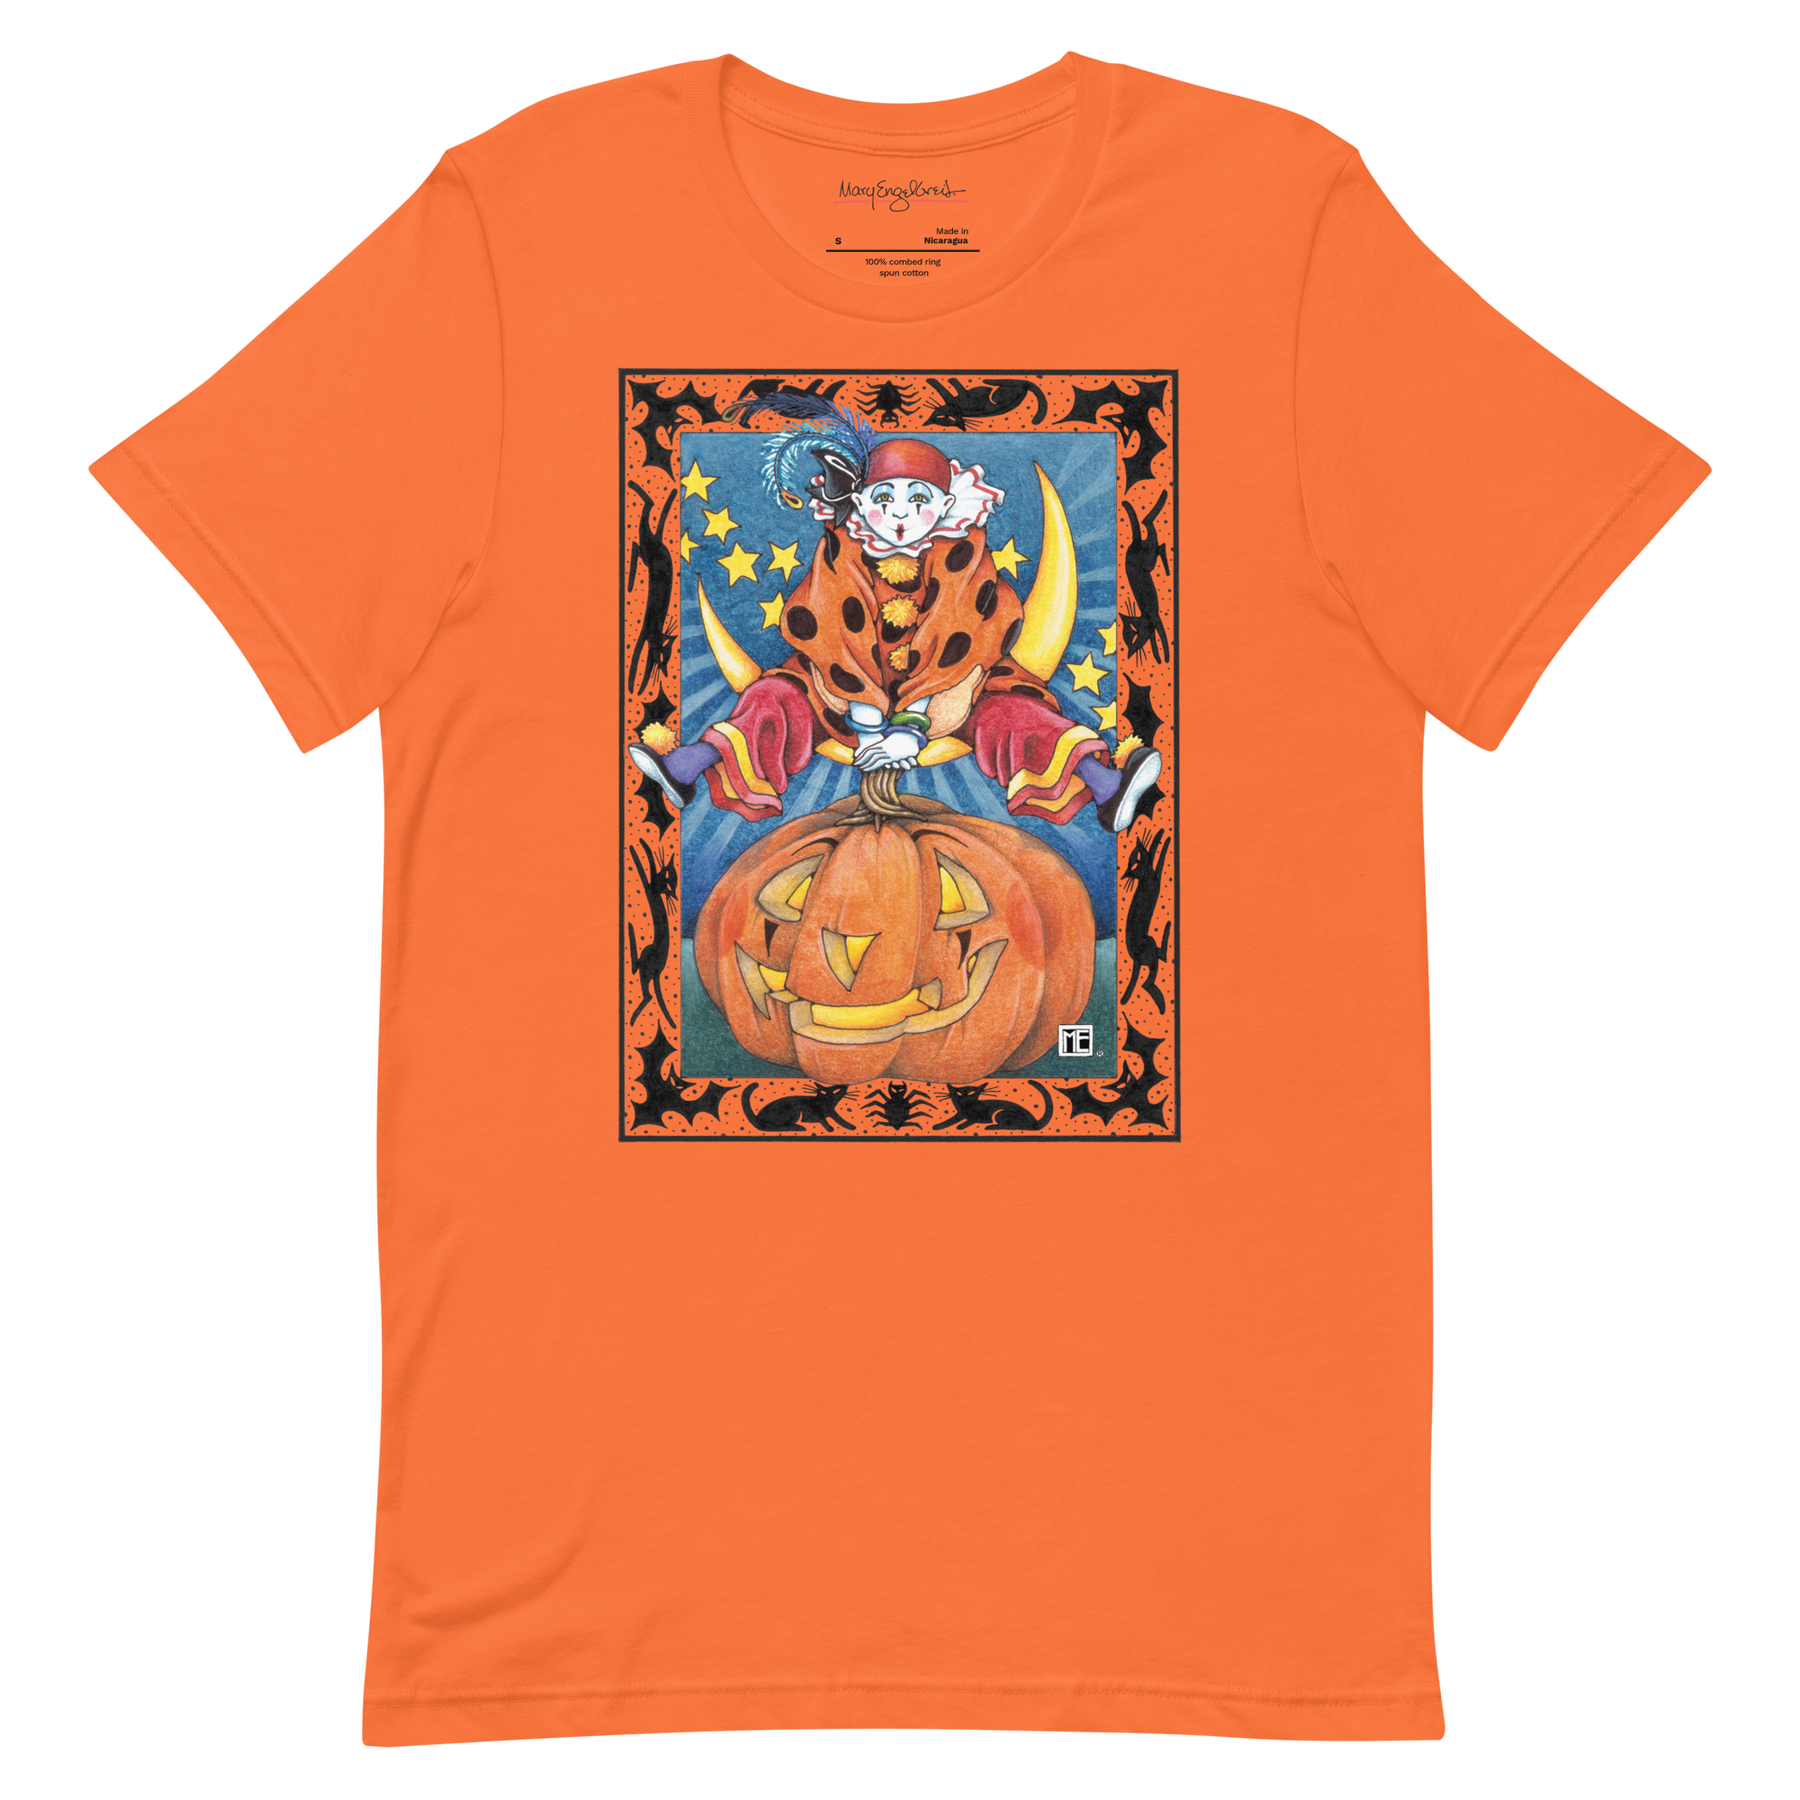 Clown Jumping Over Pumpkin Unisex T-Shirt